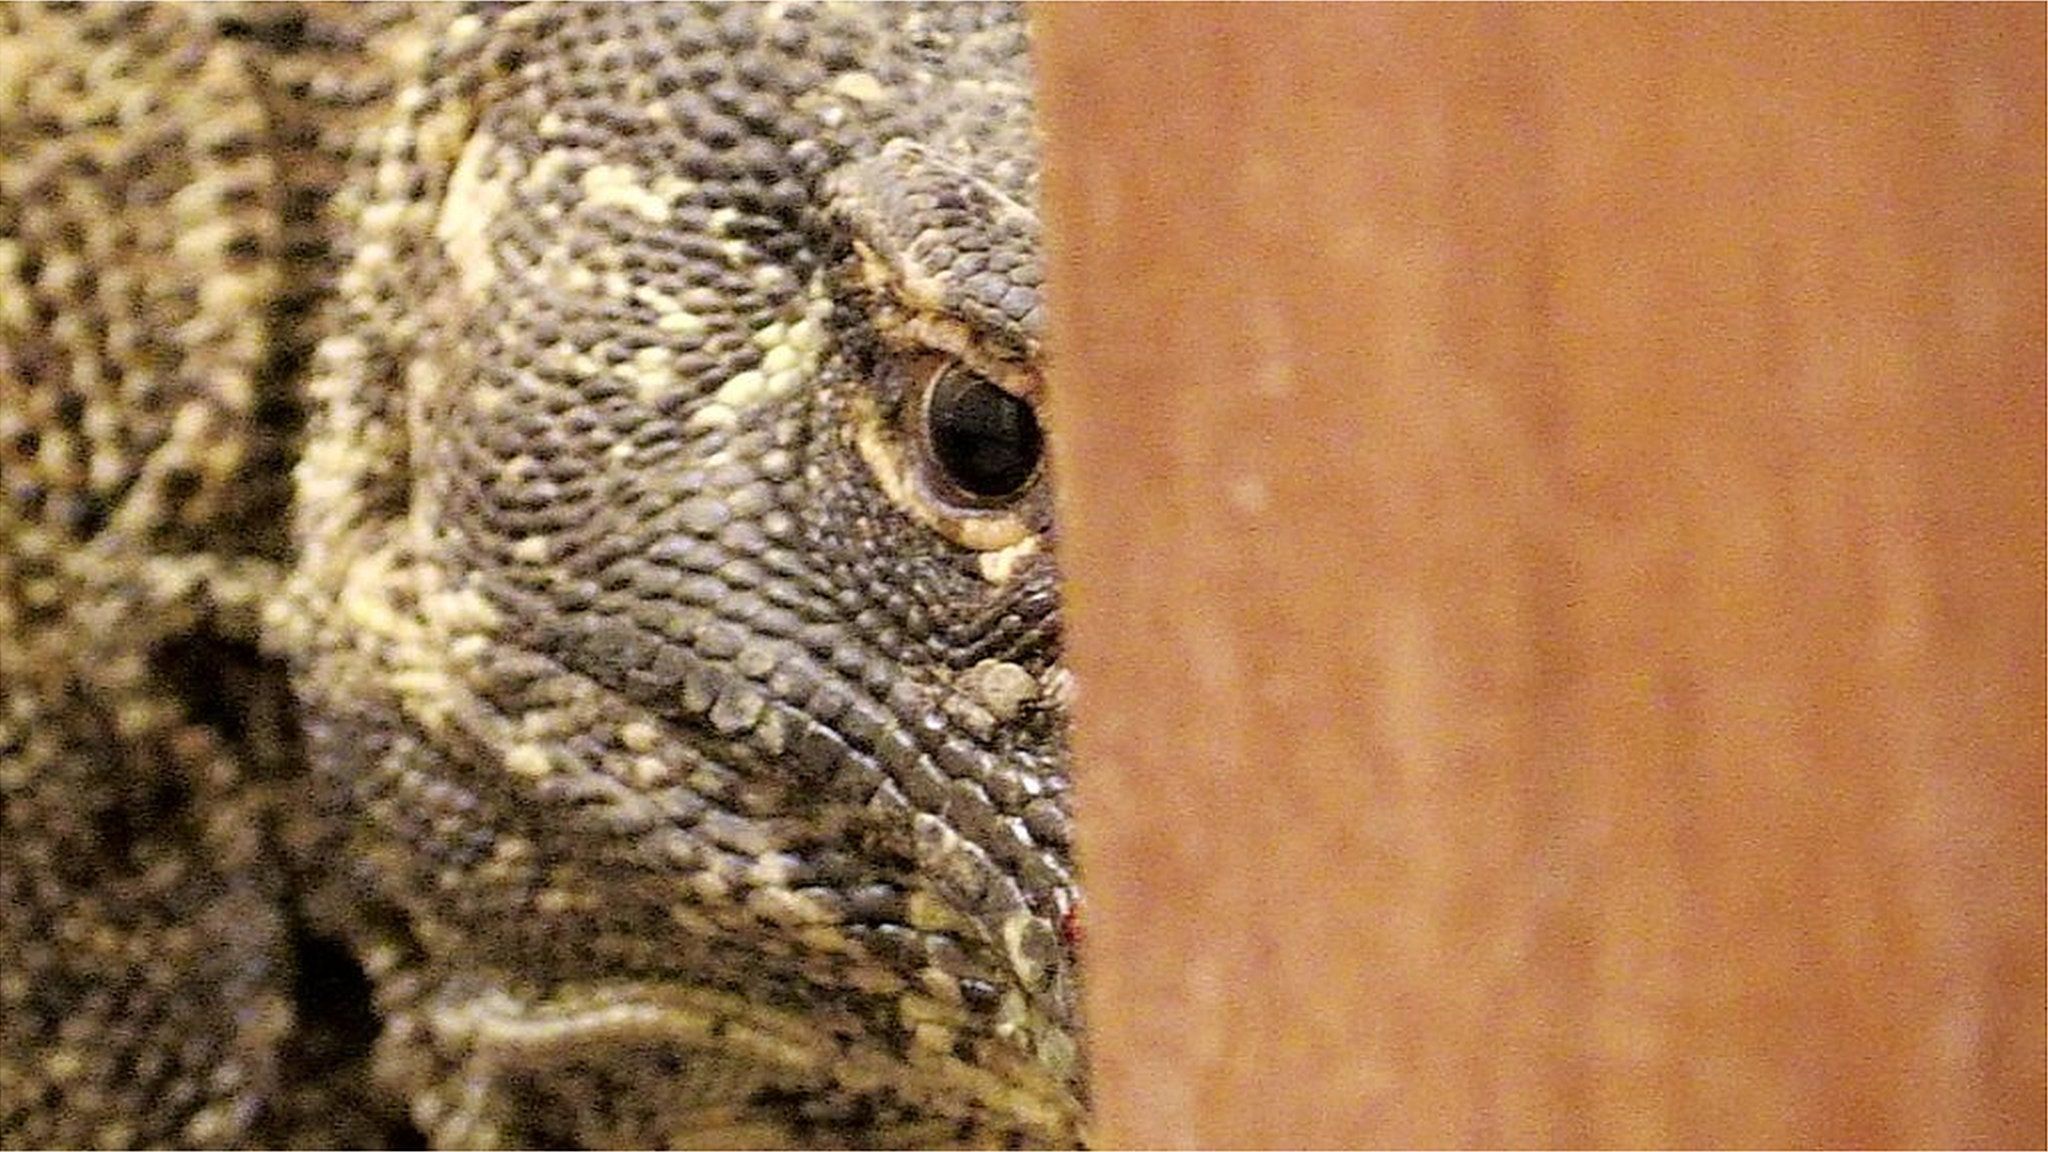 Komodo dragon behind bathroom door